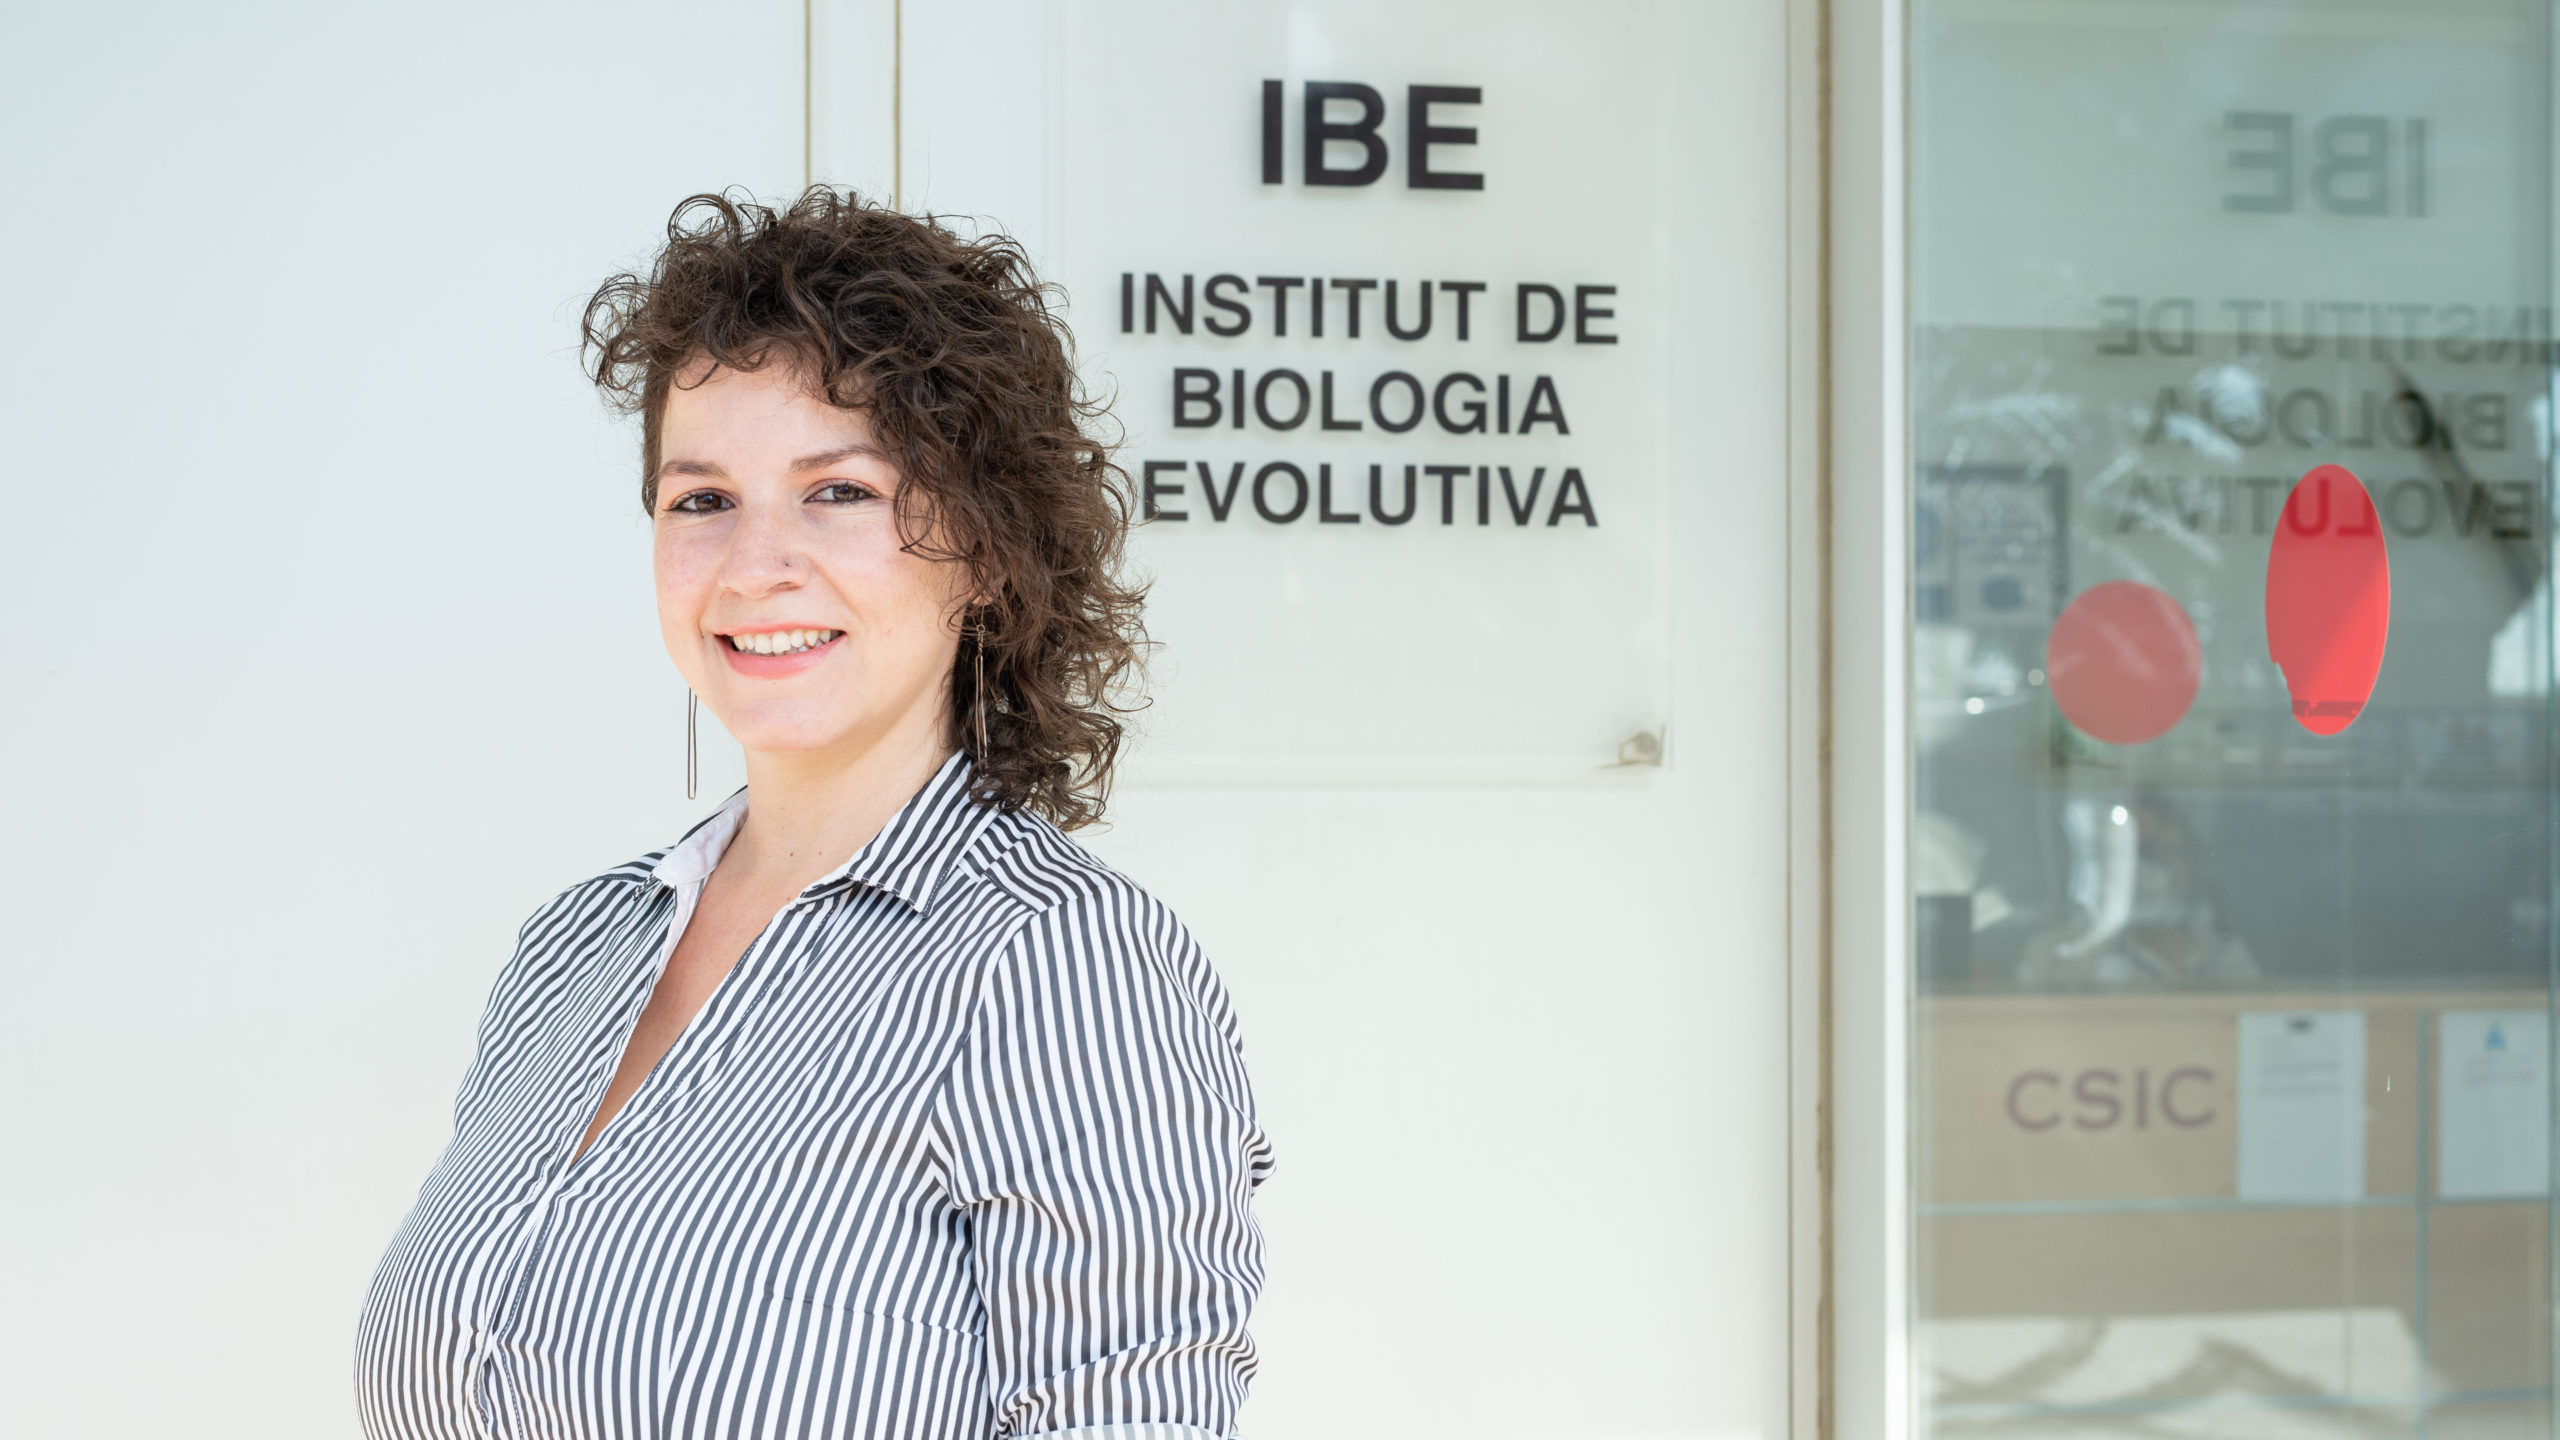 La Rosa Fernández creu fermament que és possible liderar un grup d’investigació d'una altra manera, fugint de la jerarquia. Crèdit: IBE-CSIC